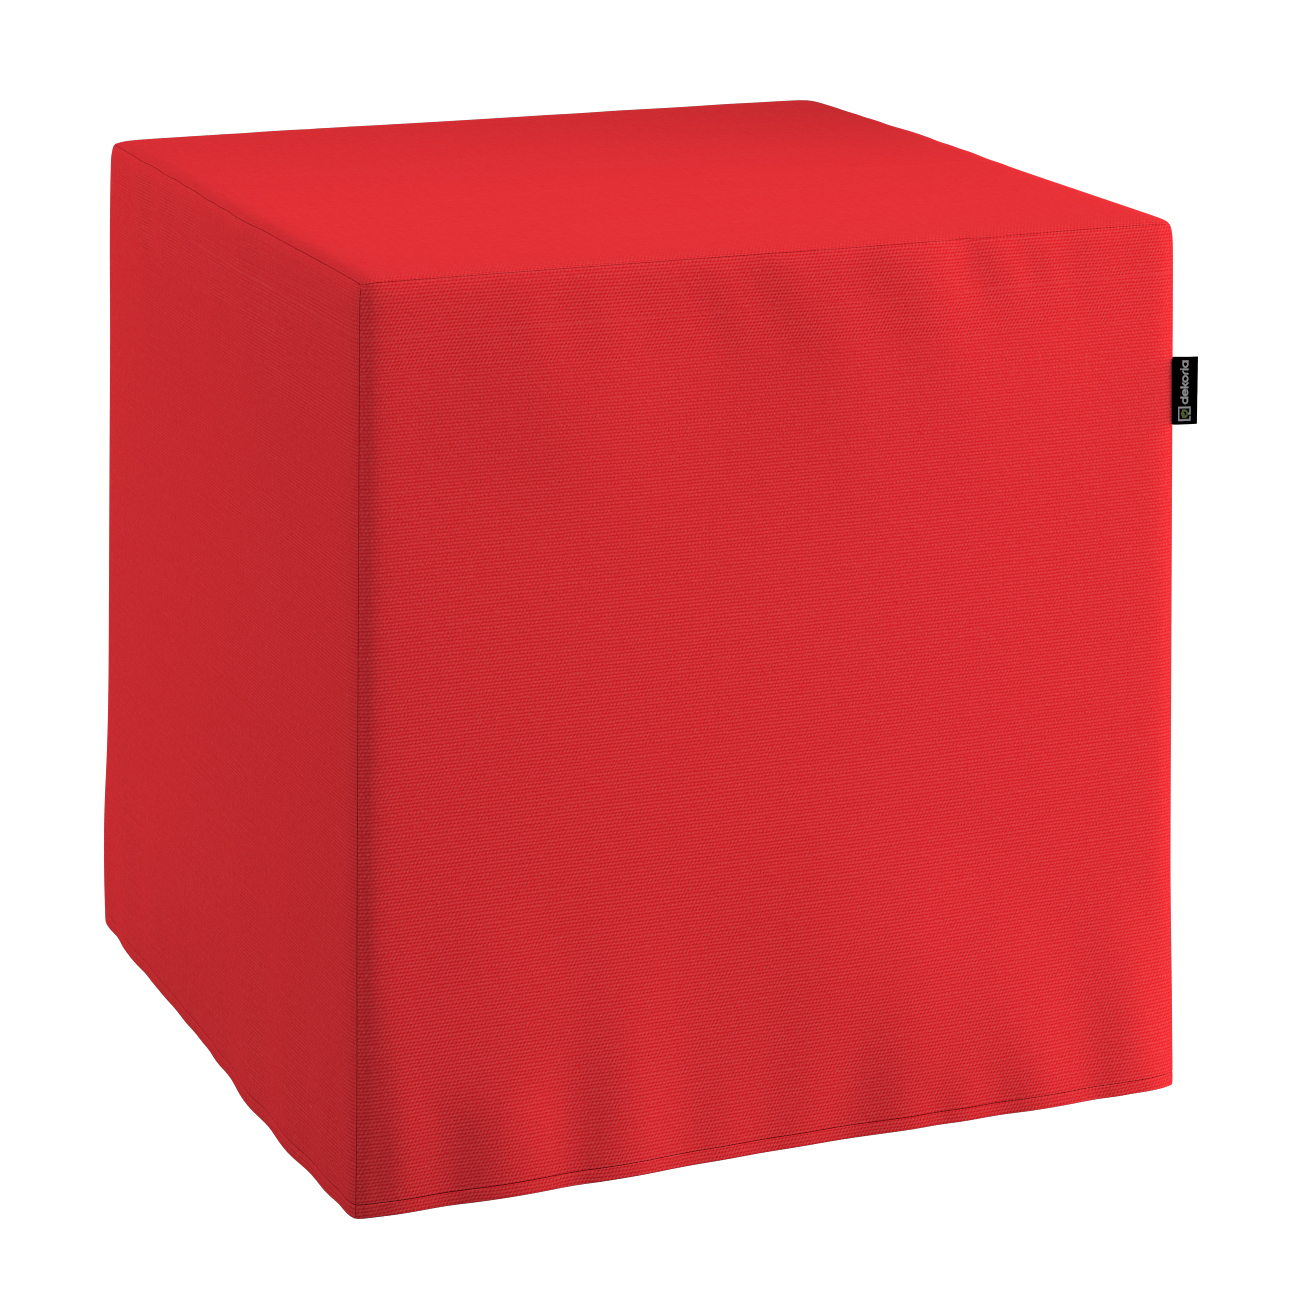 Bezug für Sitzwürfel, rot, Bezug für Sitzwürfel 40 x 40 x 40 cm, Loneta (13 günstig online kaufen